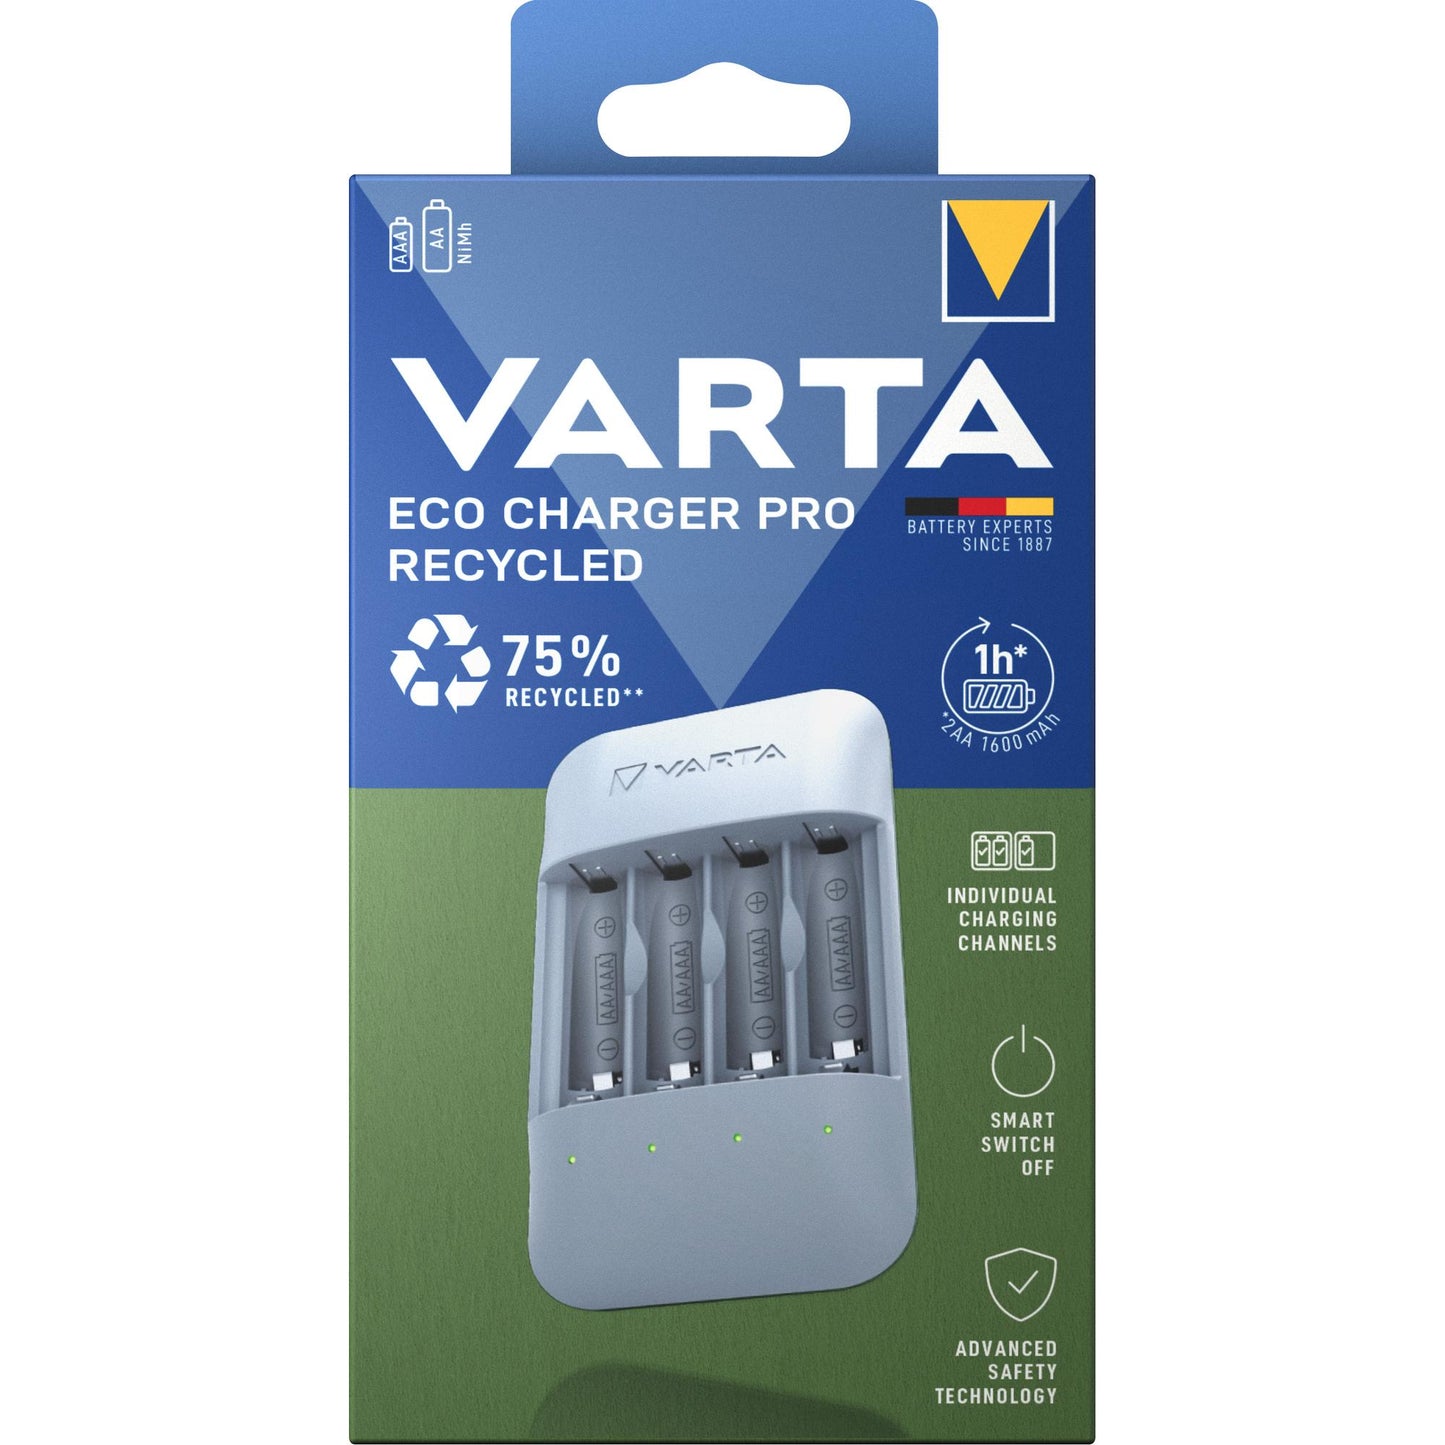 VARTA NiMH Universal Ladegerät Eco Charger Pro - Recycled ohne Akkus für AA/AAA Retail